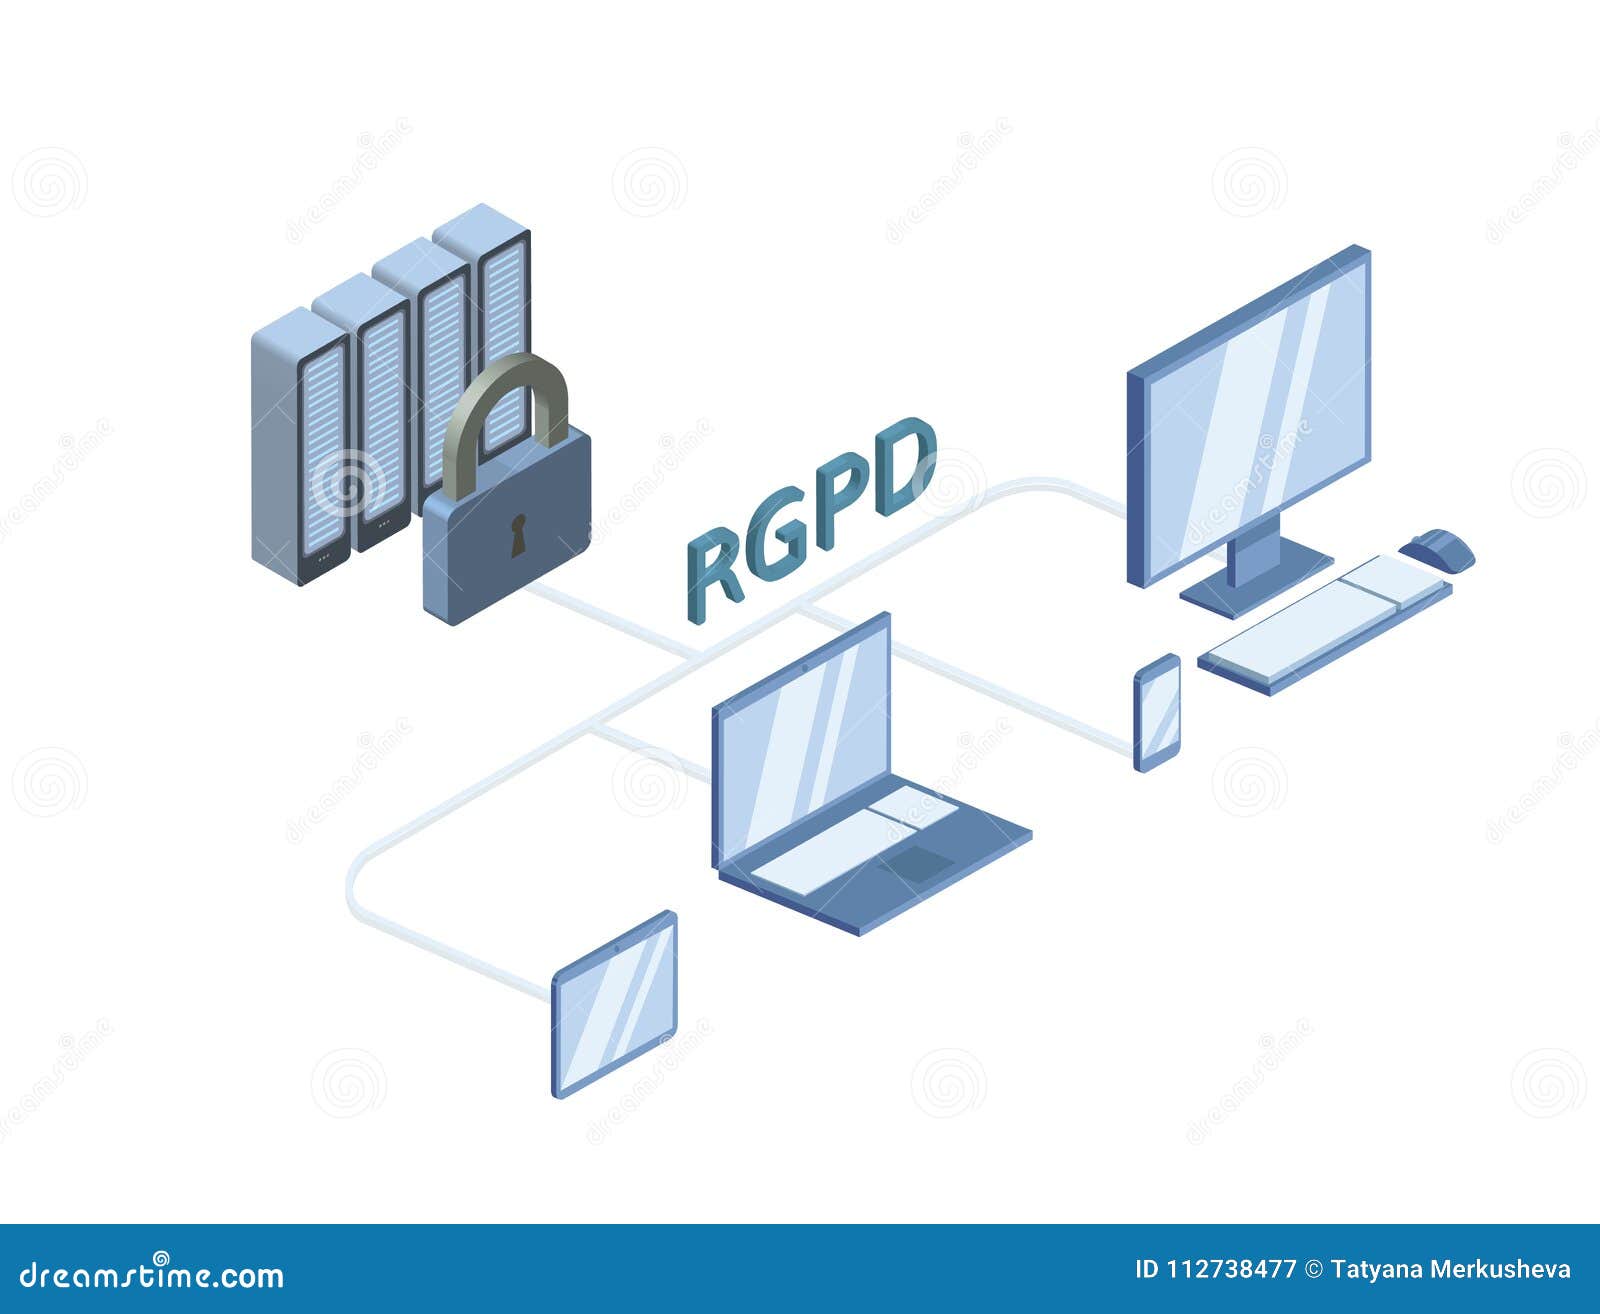 rgpd, spanish and italian version version of gdpr, regolamento generale sulla protezione dei dati. concept 